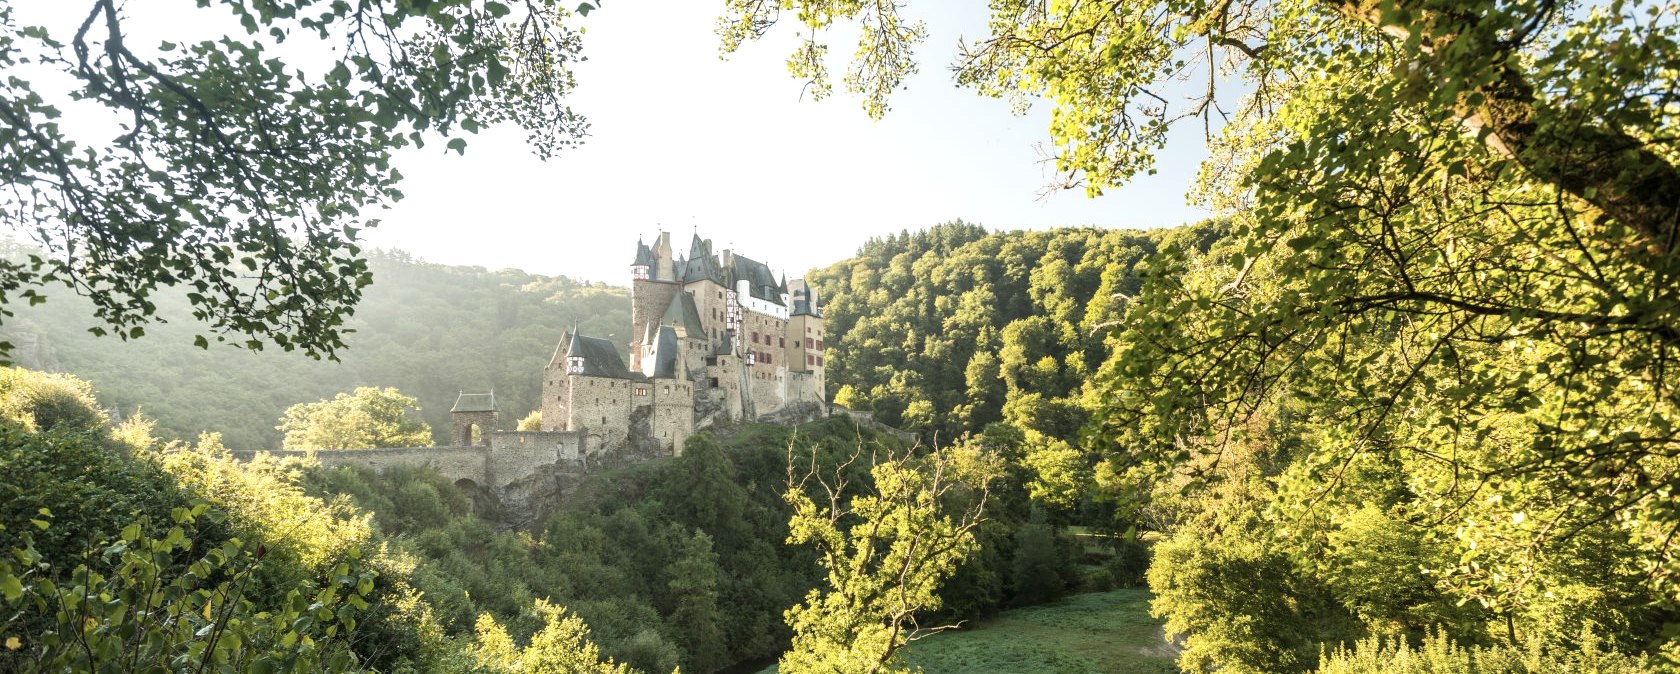 Blick auf die Burg Eltz, © Rheinland-Pfalz Tourismus GmbH, D. Ketz